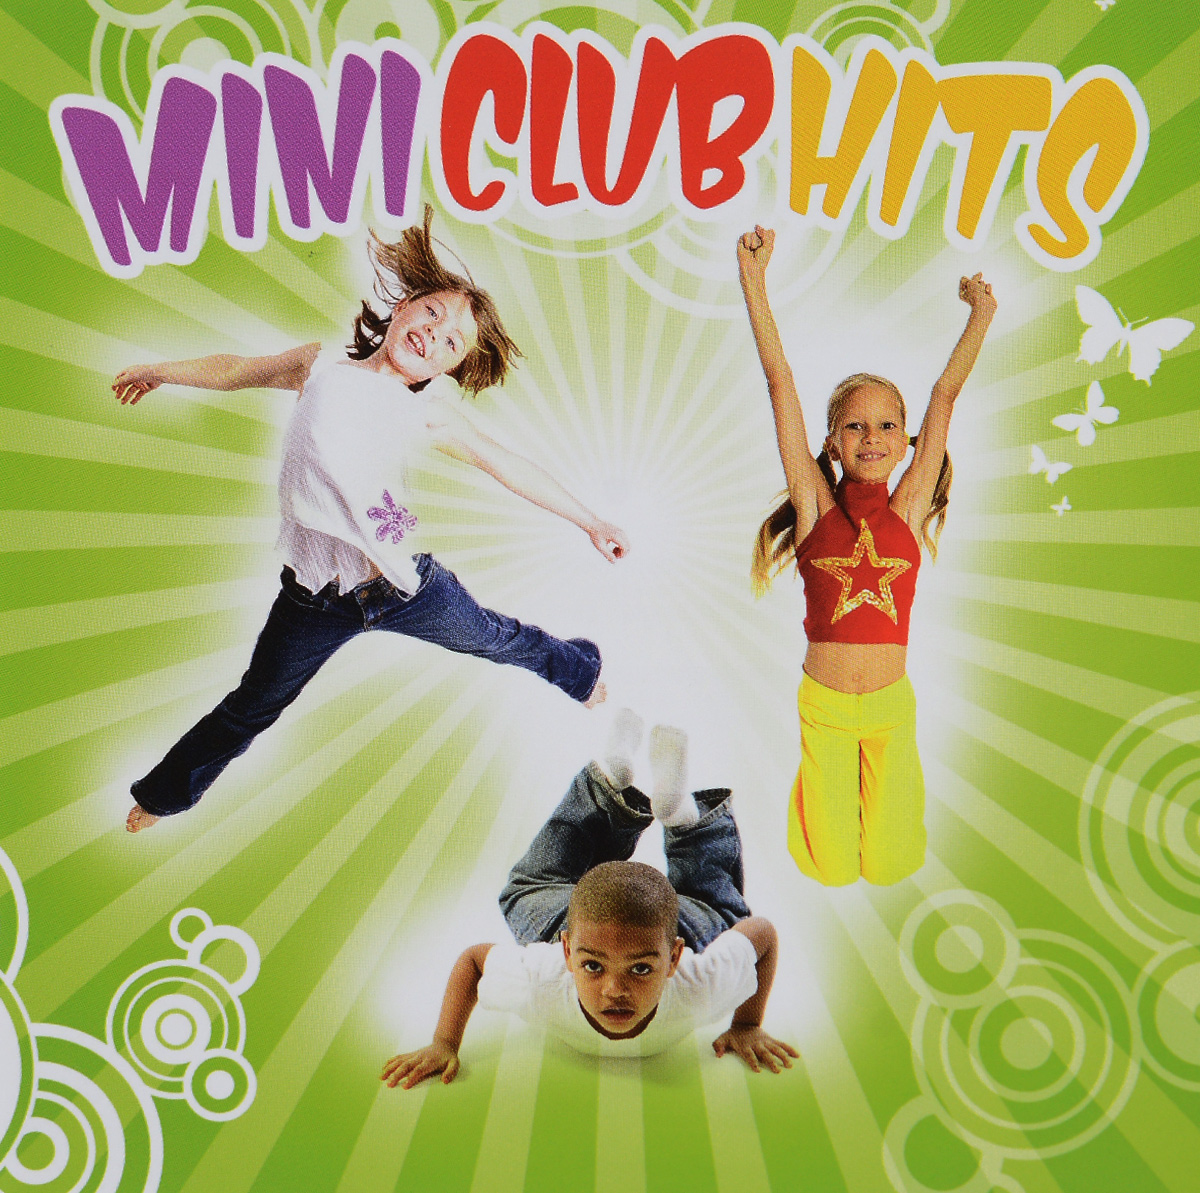 Mini Club Hits